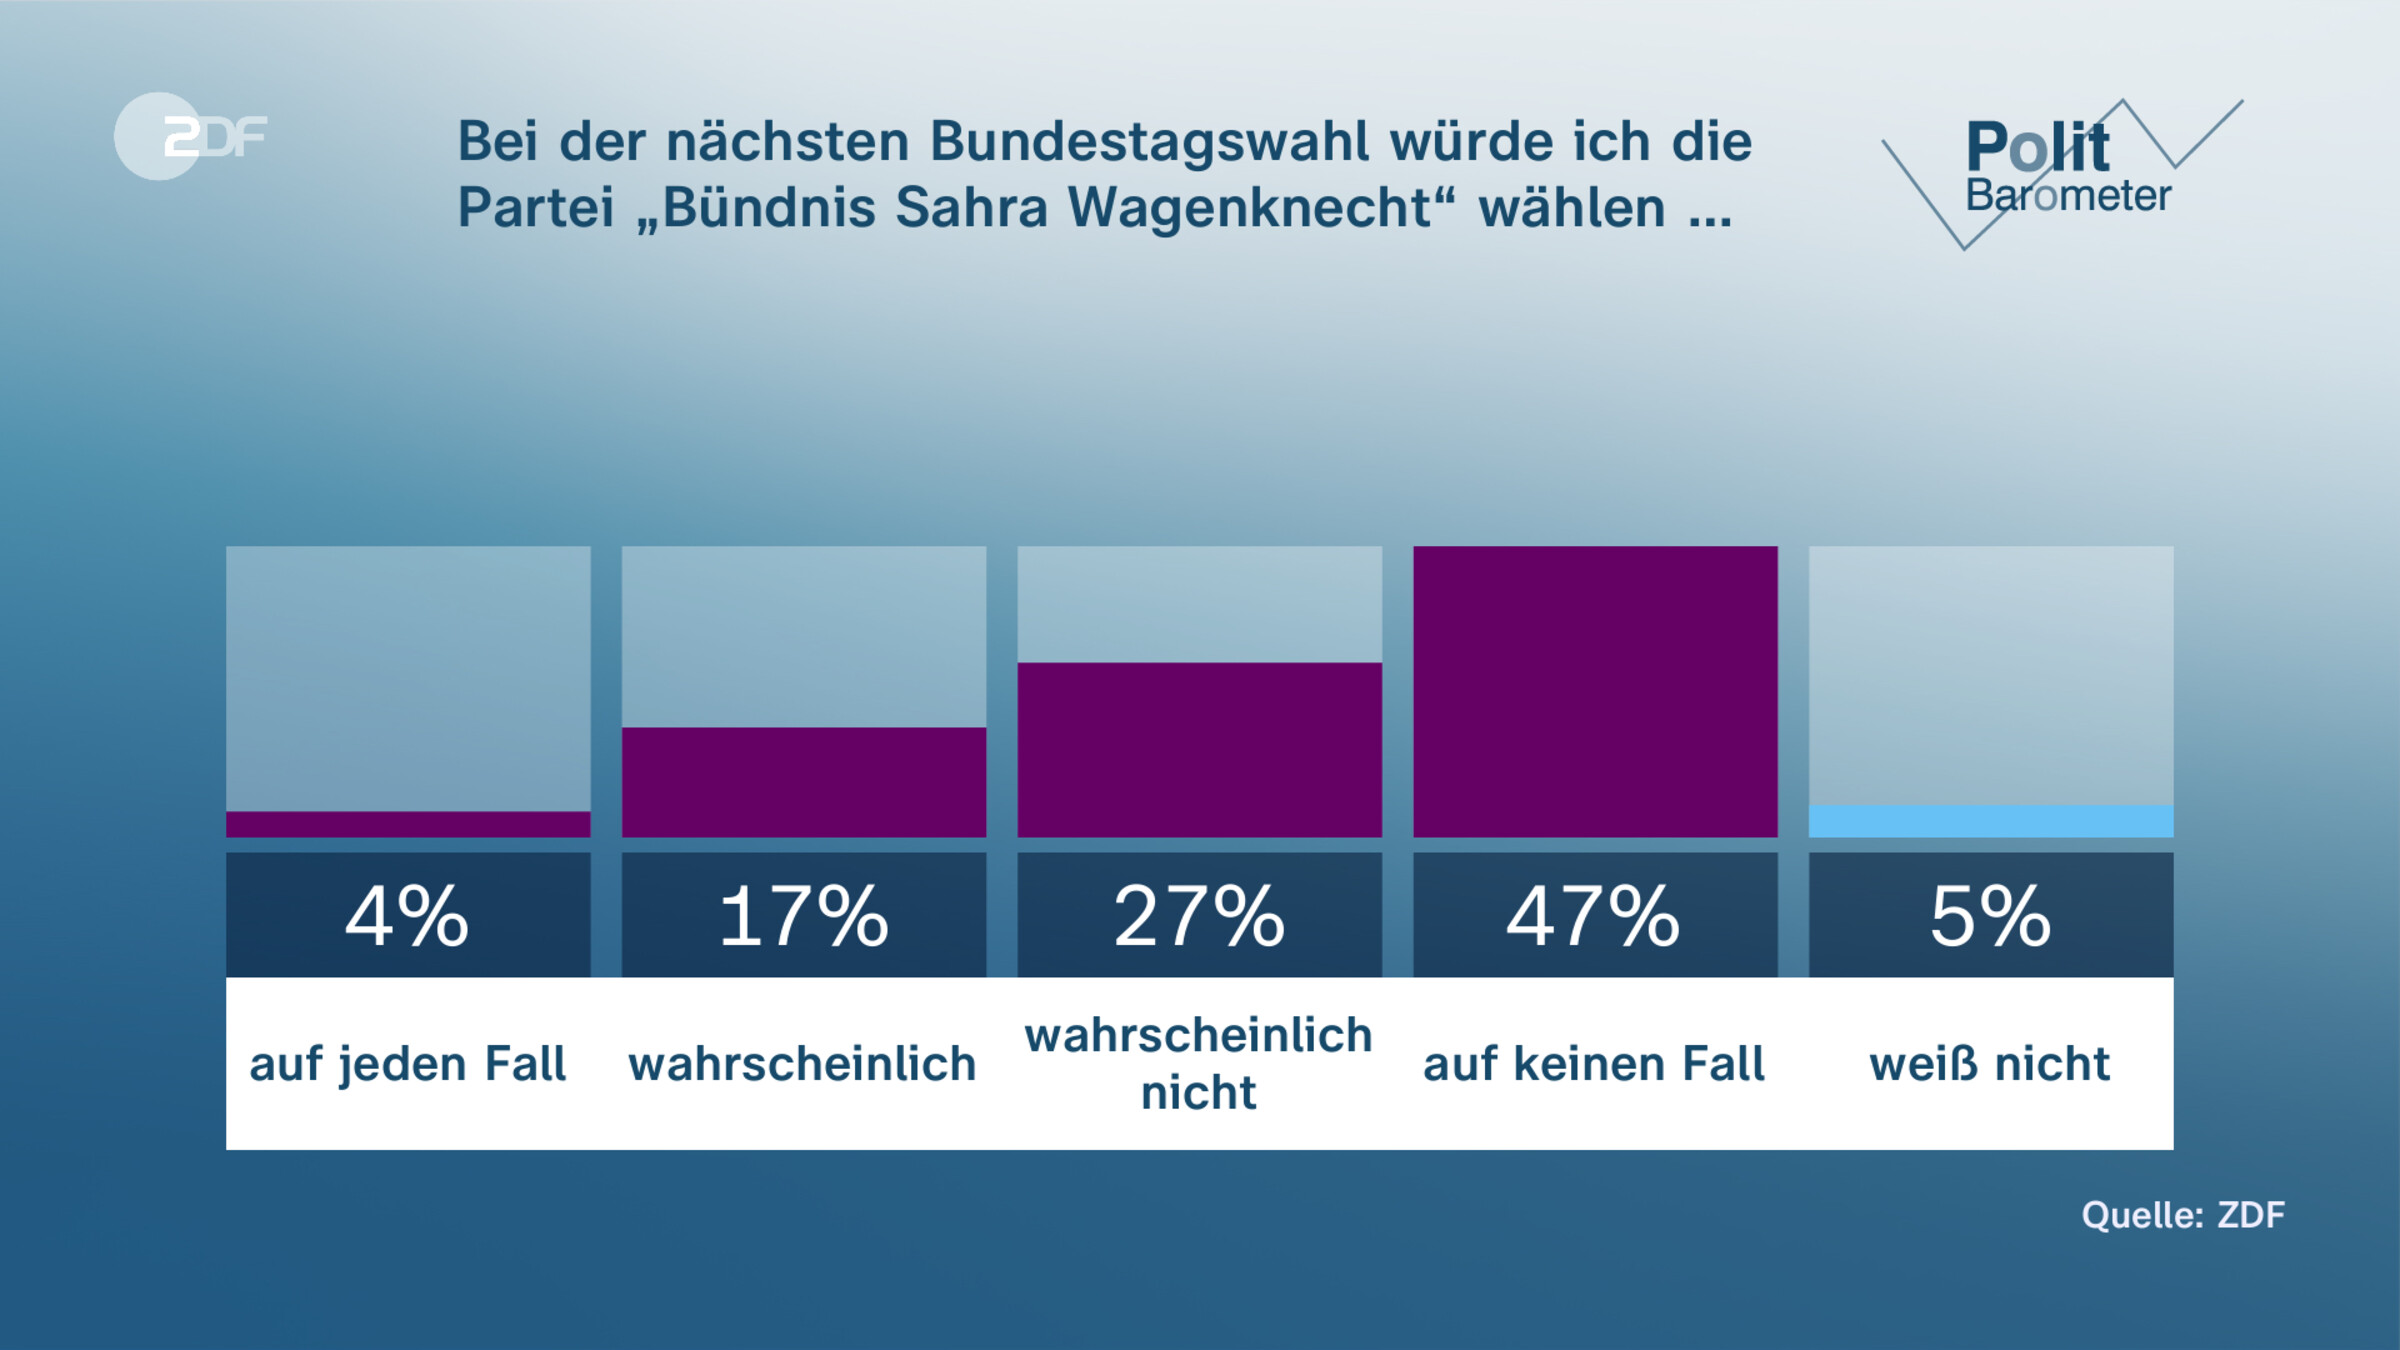 Bei der nächsten Bundestagswahl würde ich die Partei „Bündnis Sahra Wagenknecht“ wählen …